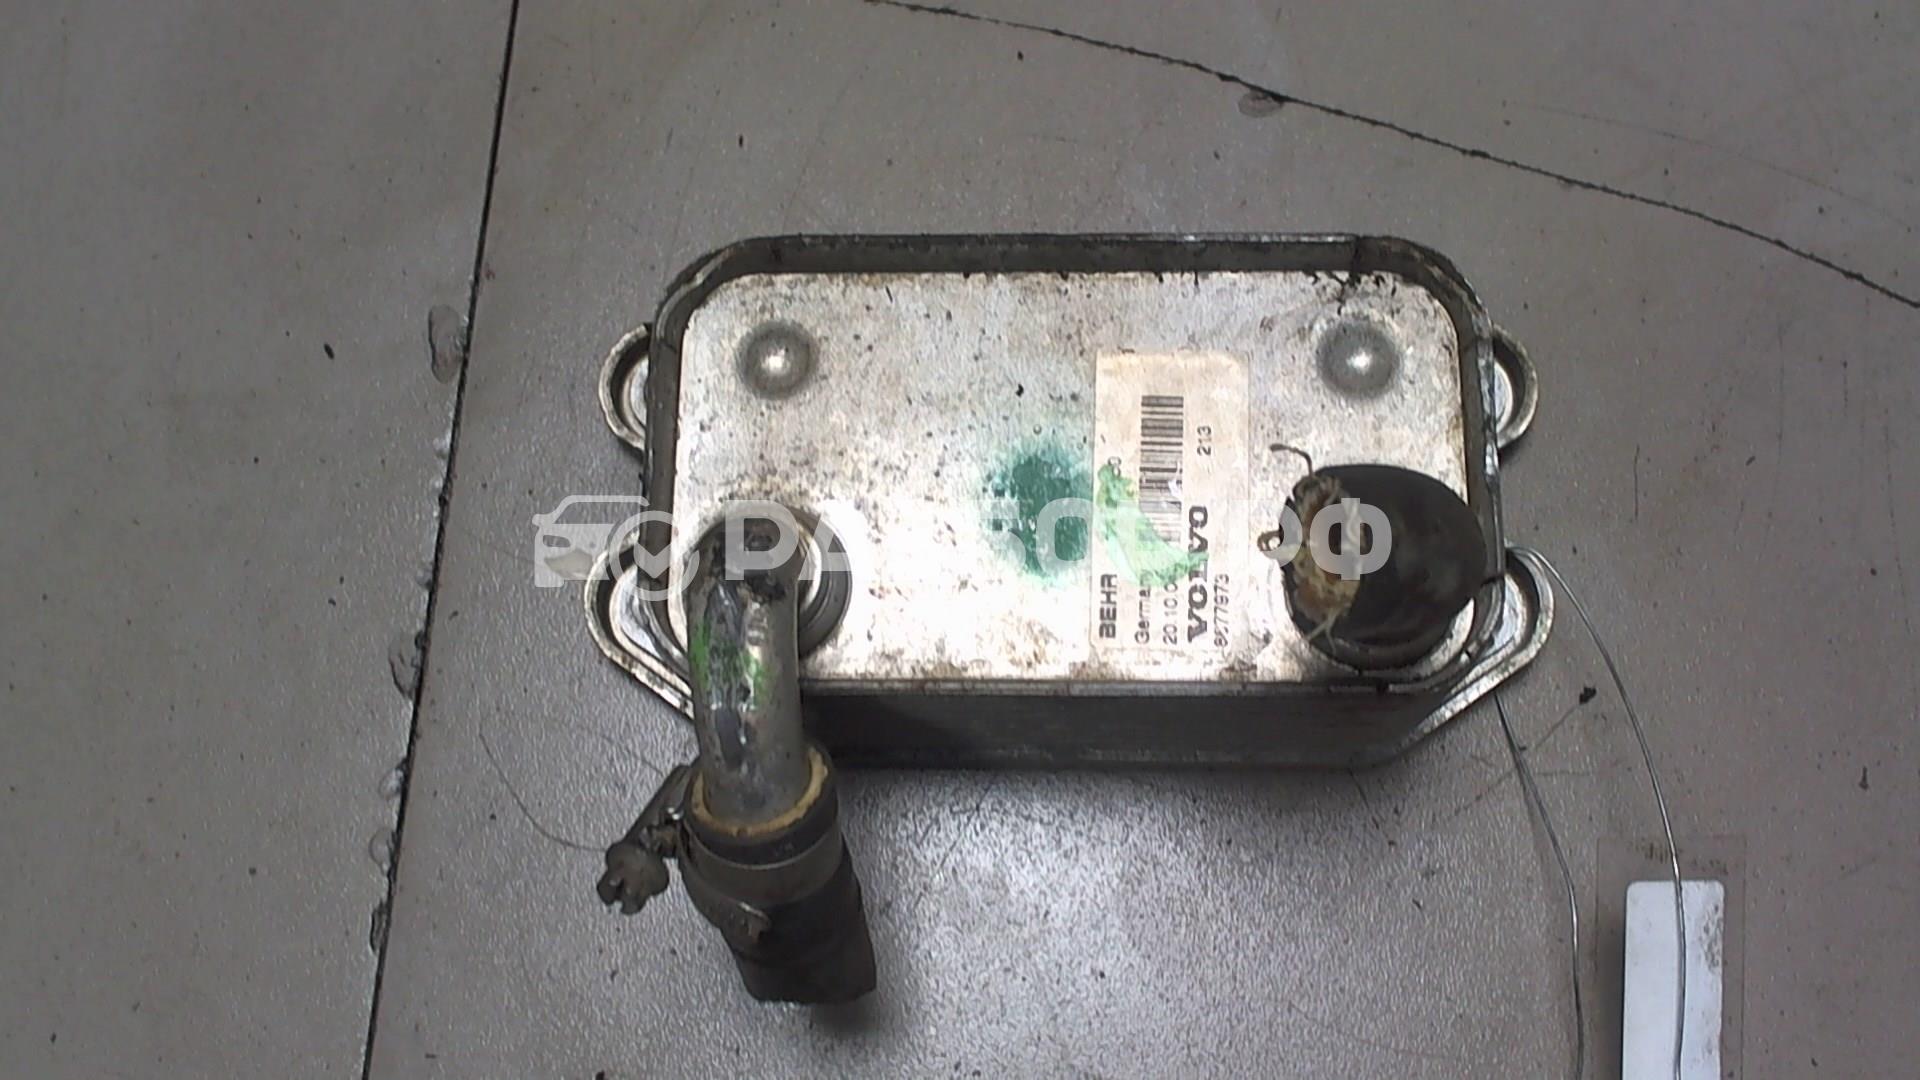 Радиатор АКПП (маслоохладитель)